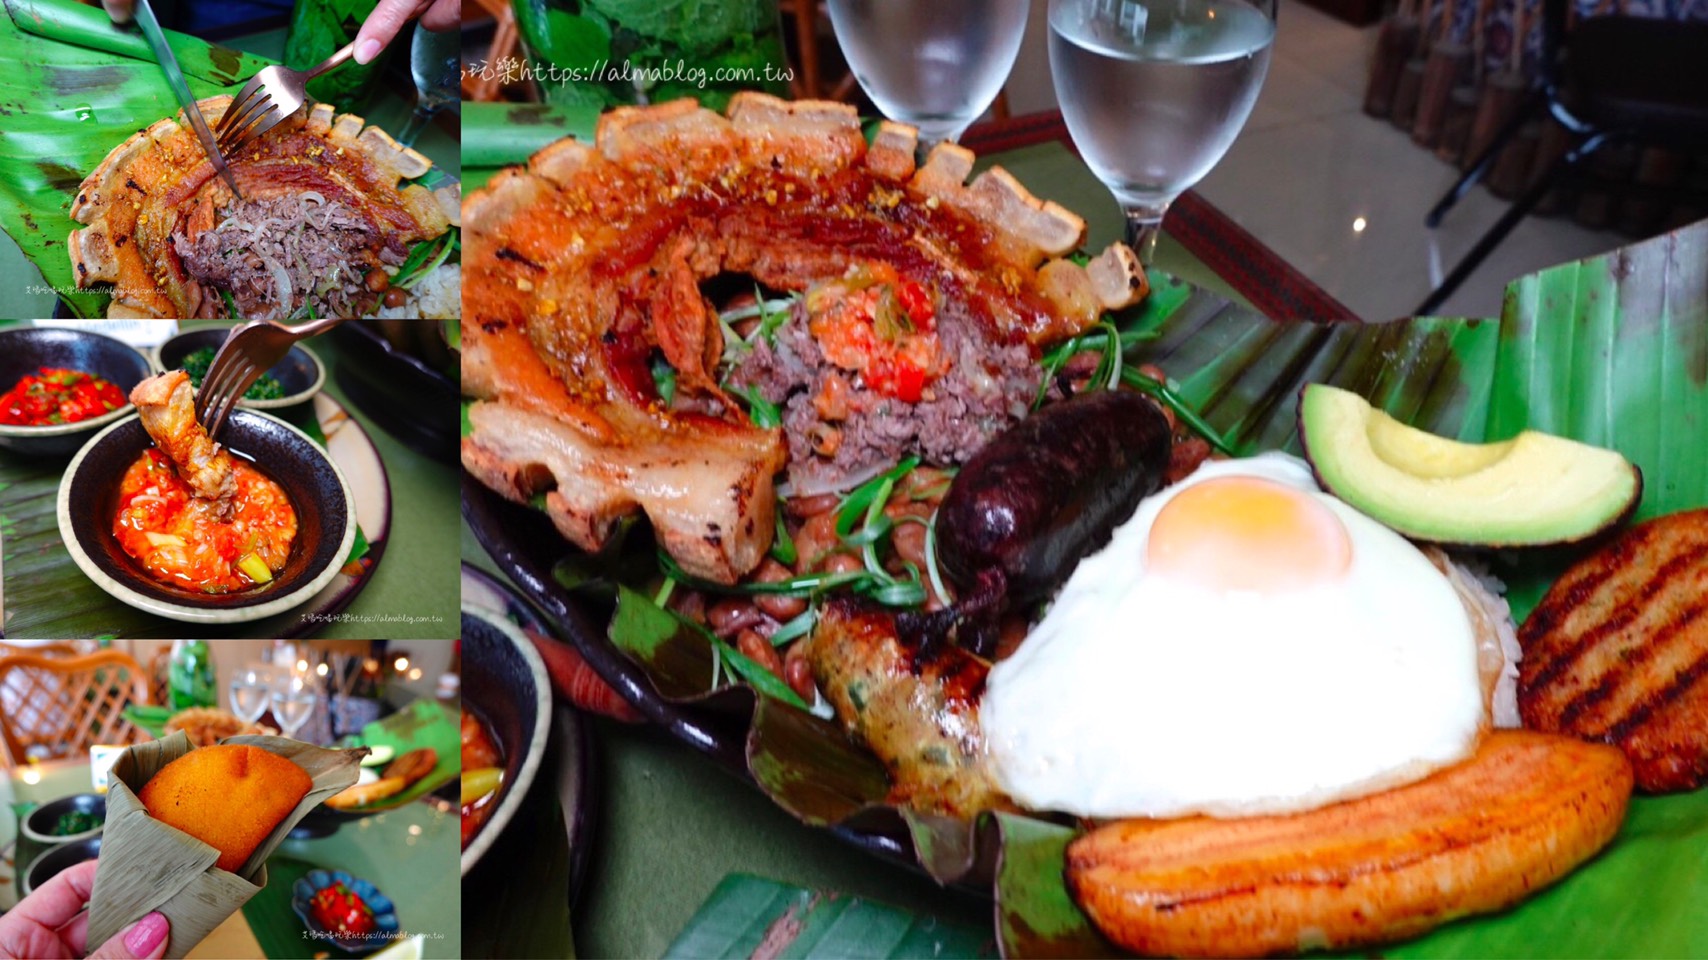 El Beso de La Rana 箭毒蛙之吻,哥倫比亞,林口餐廳,派薩盤,炸餡餃,起司麵包,龜山美食 @艾瑪  吃喝玩樂札記